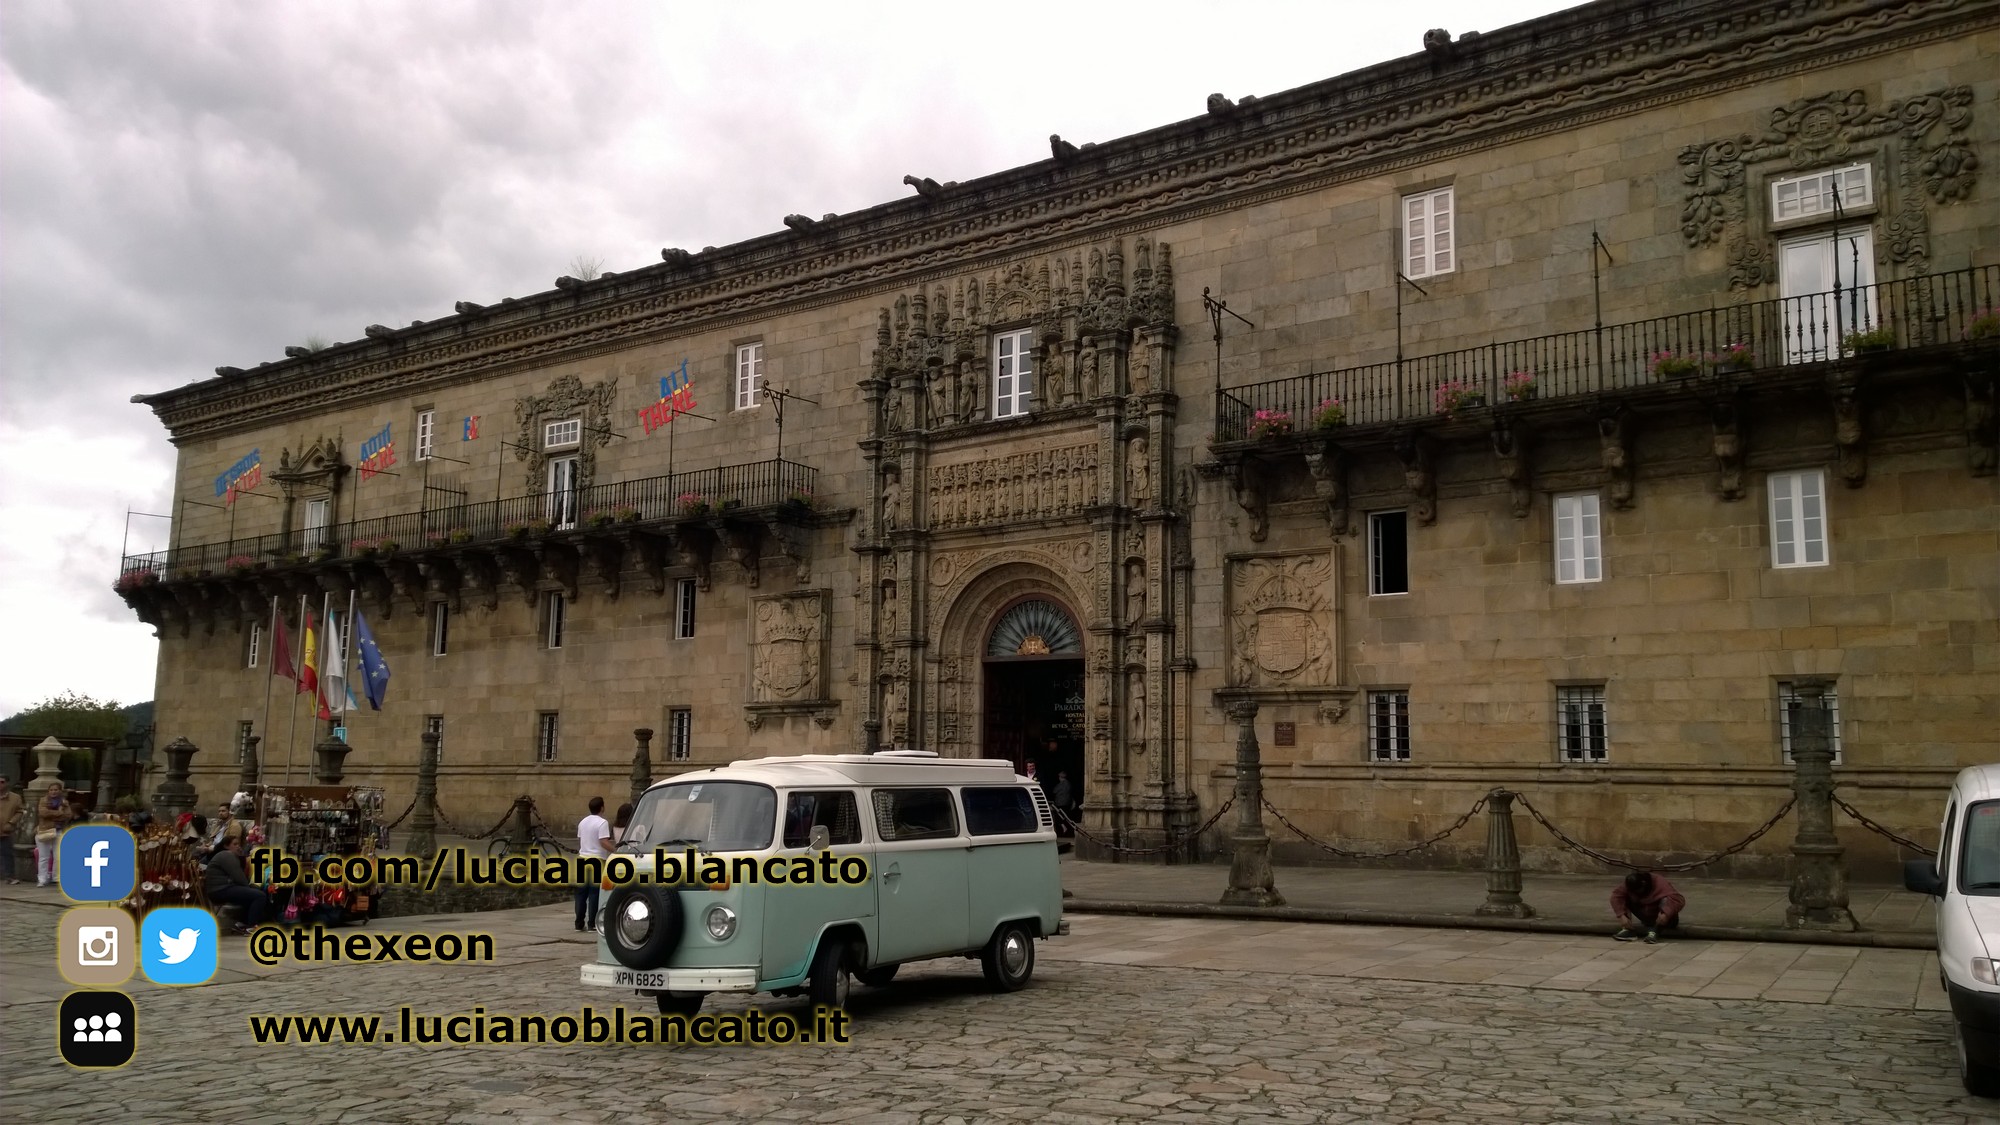 Santiago de Compostela - Praza do Obradoiro